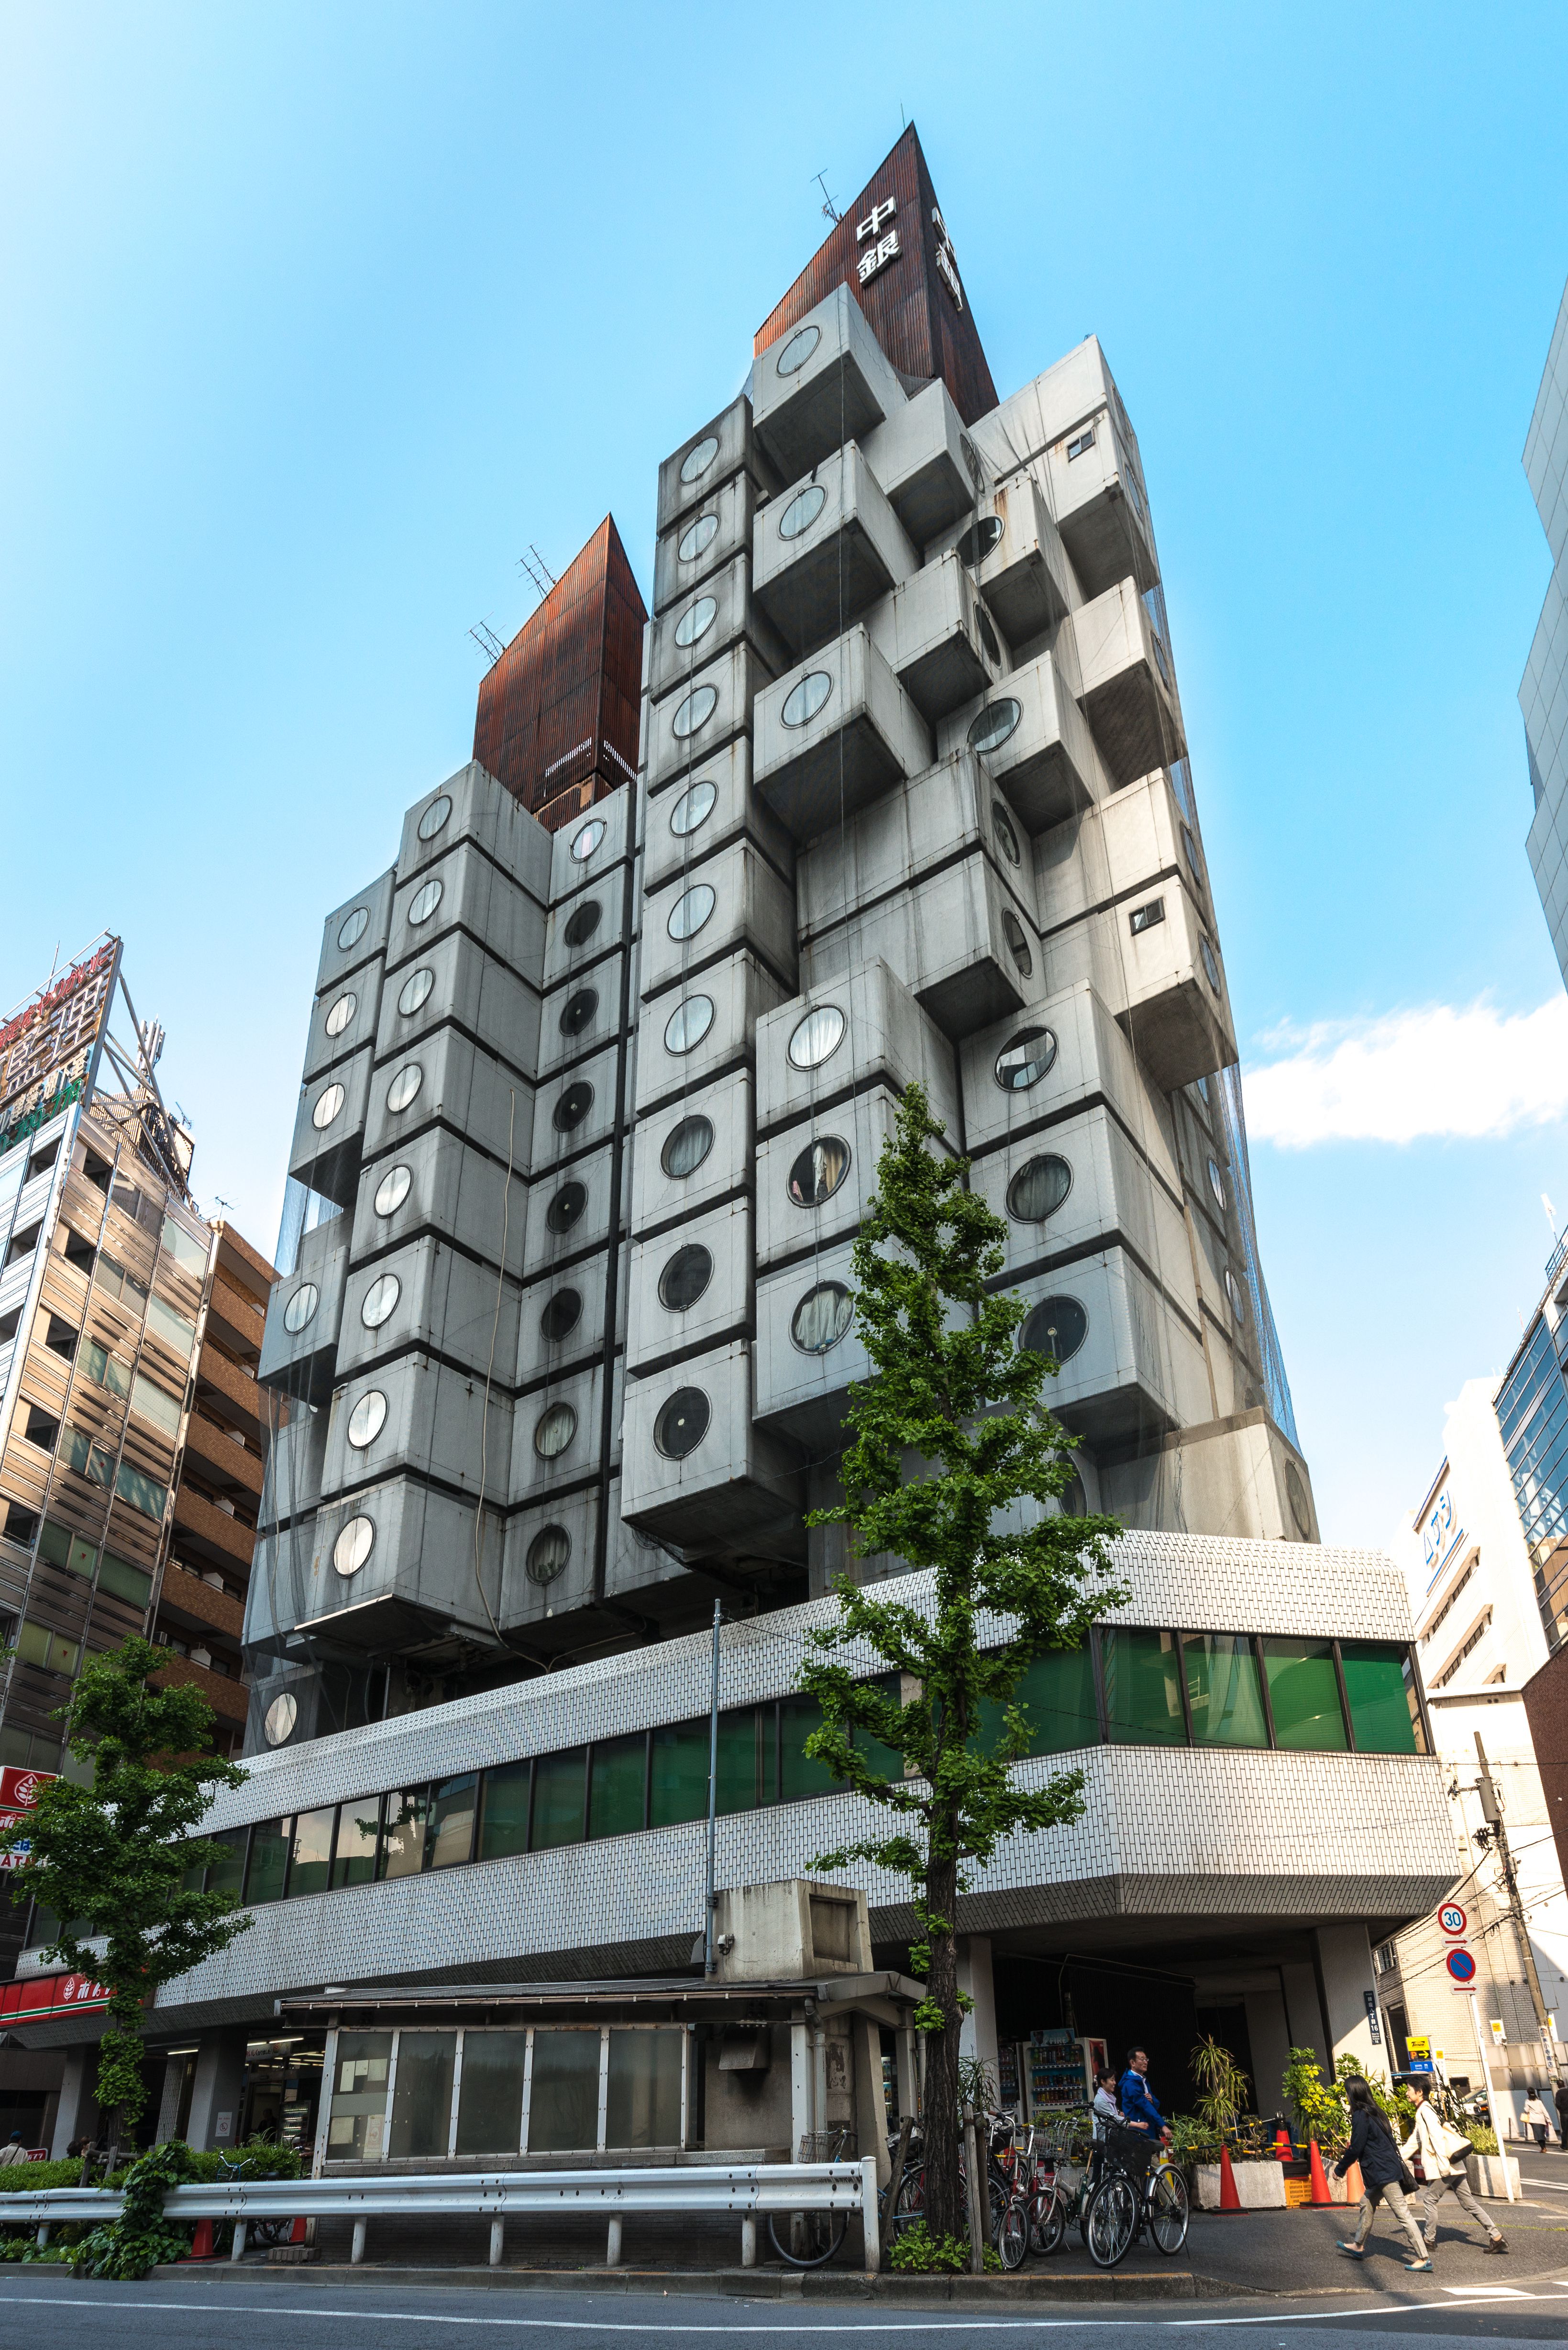 Ende eines Kolosses: Der brutalistische Nakagin Capsule Tower in Tokio wird abgerissen